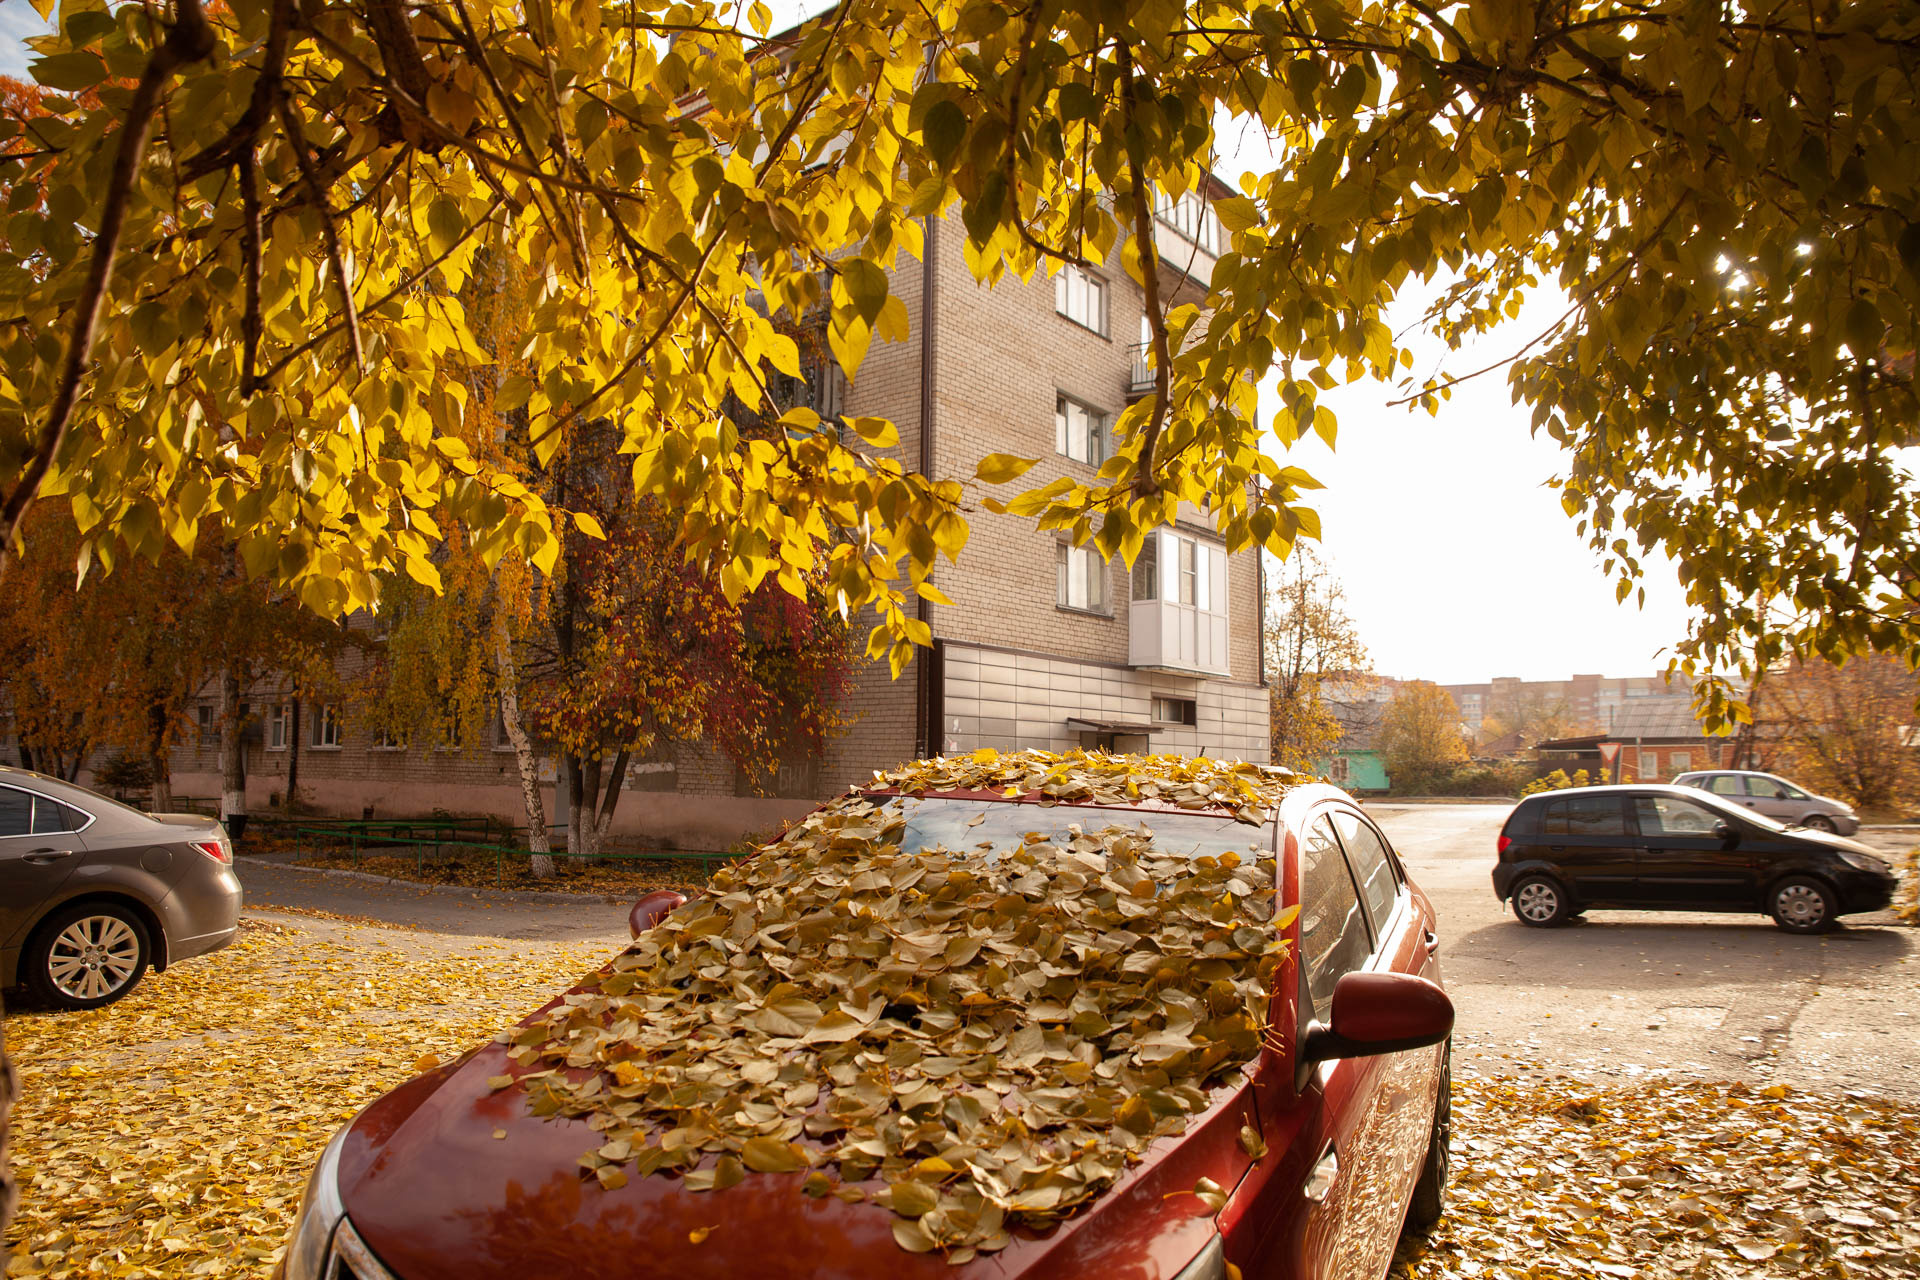 Осень заботливо укутывает машины пледом из листьев. Смотрится до того красиво, что рука не поднимается смахнуть их